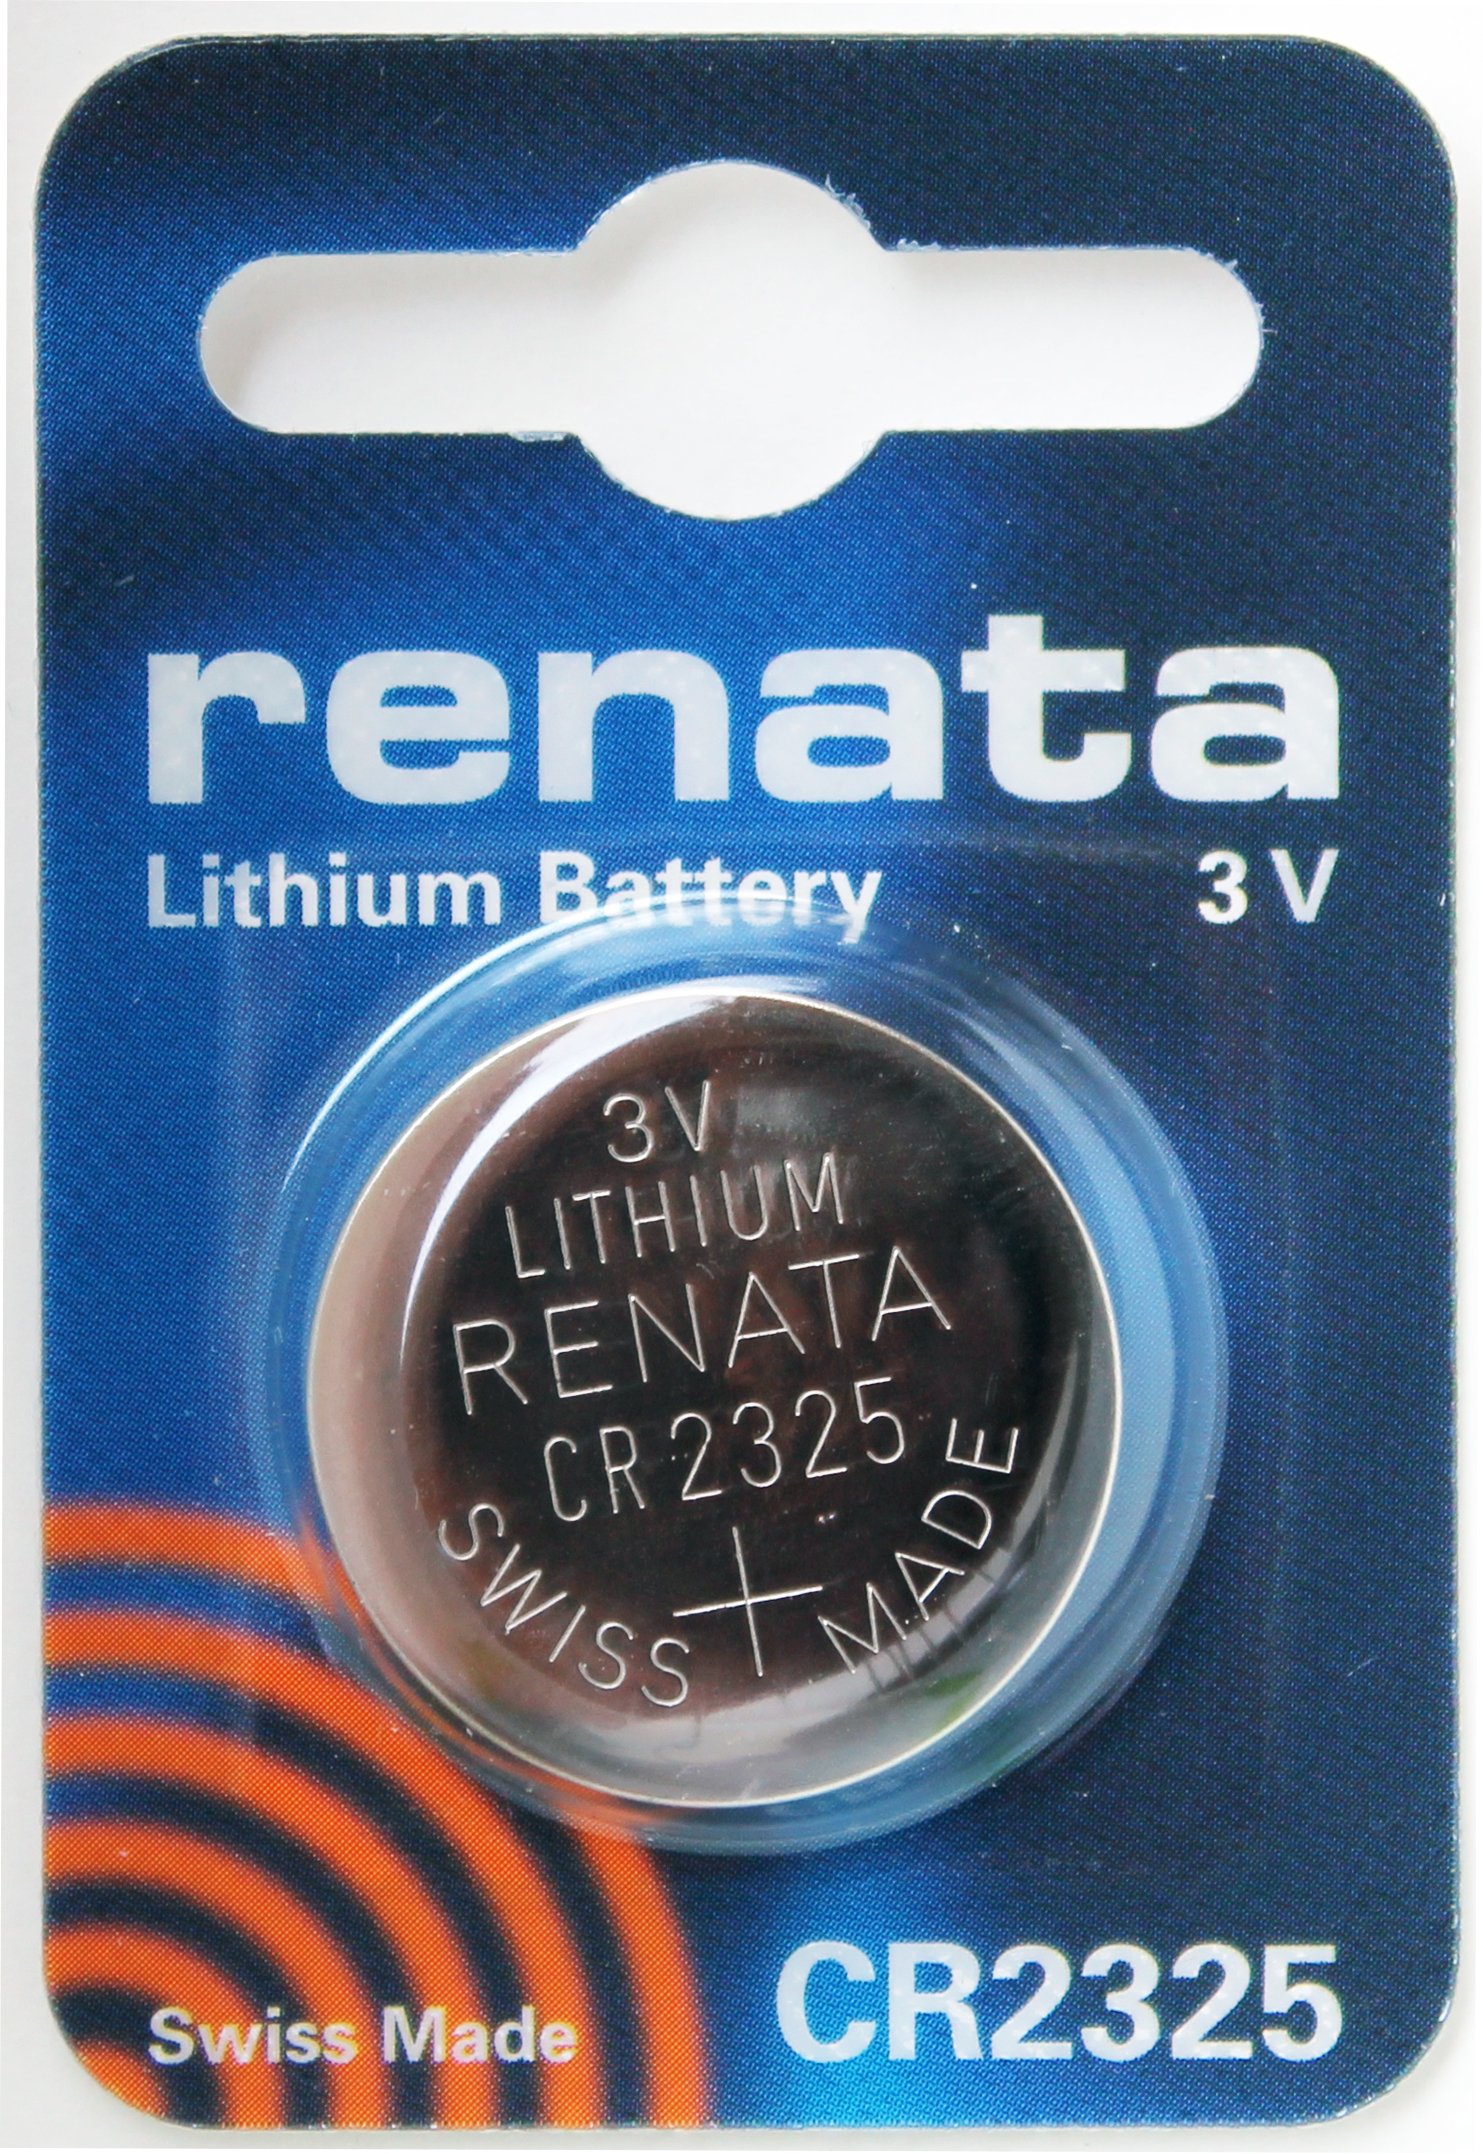 Renata #CR2325 Lithium Coin Battery